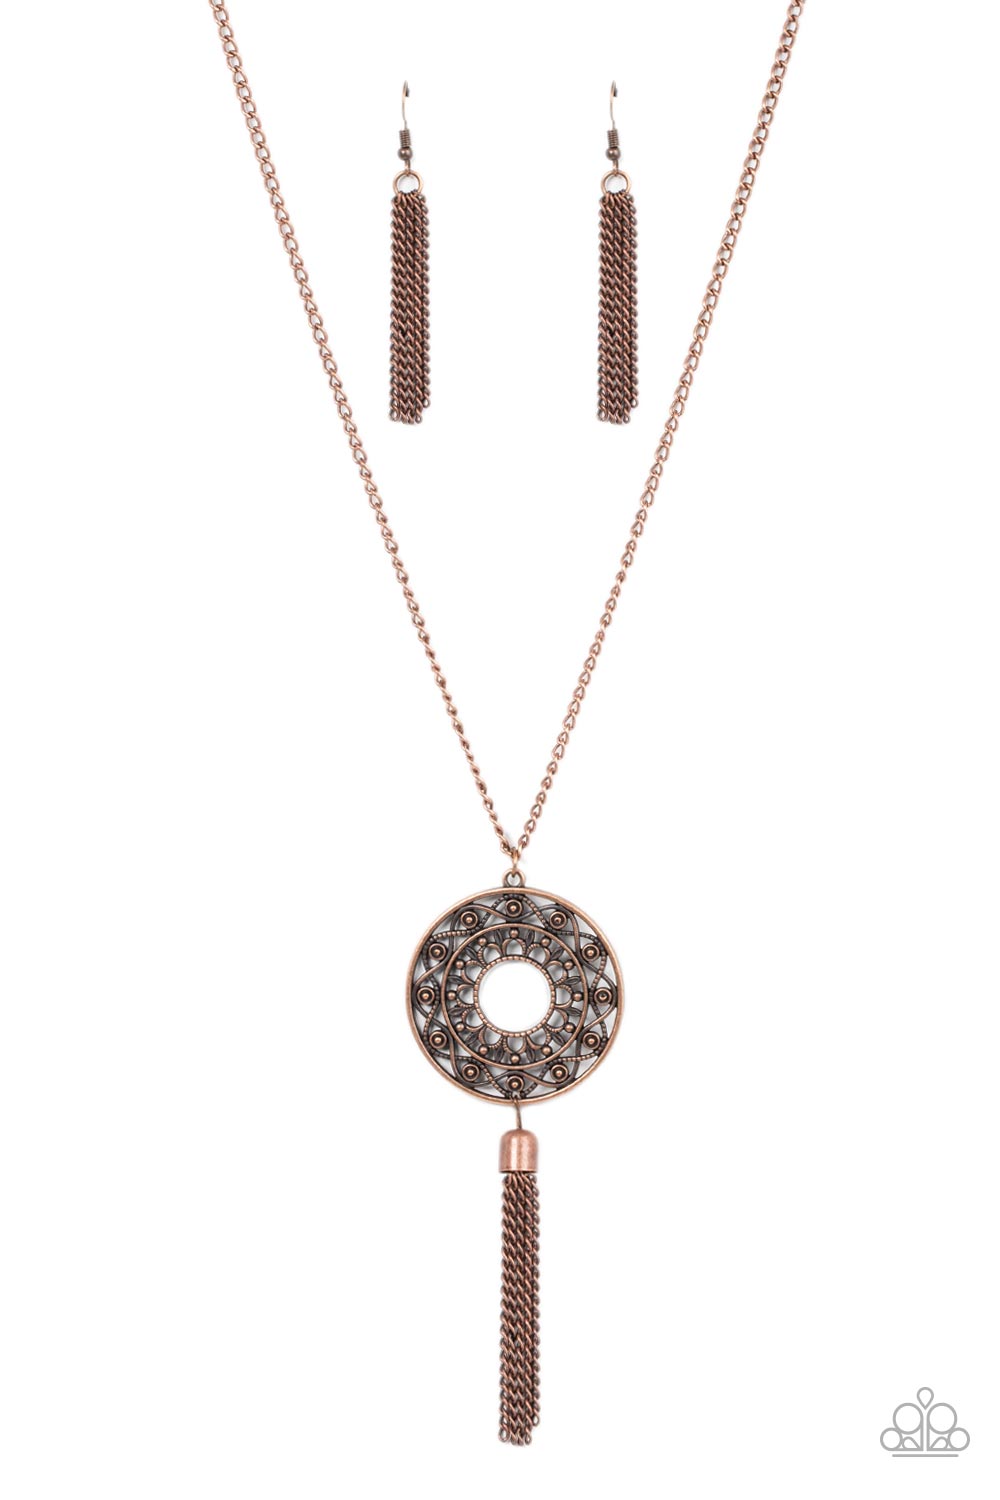 Paparazzi Necklaces - Tai Chi Tassel - Copper